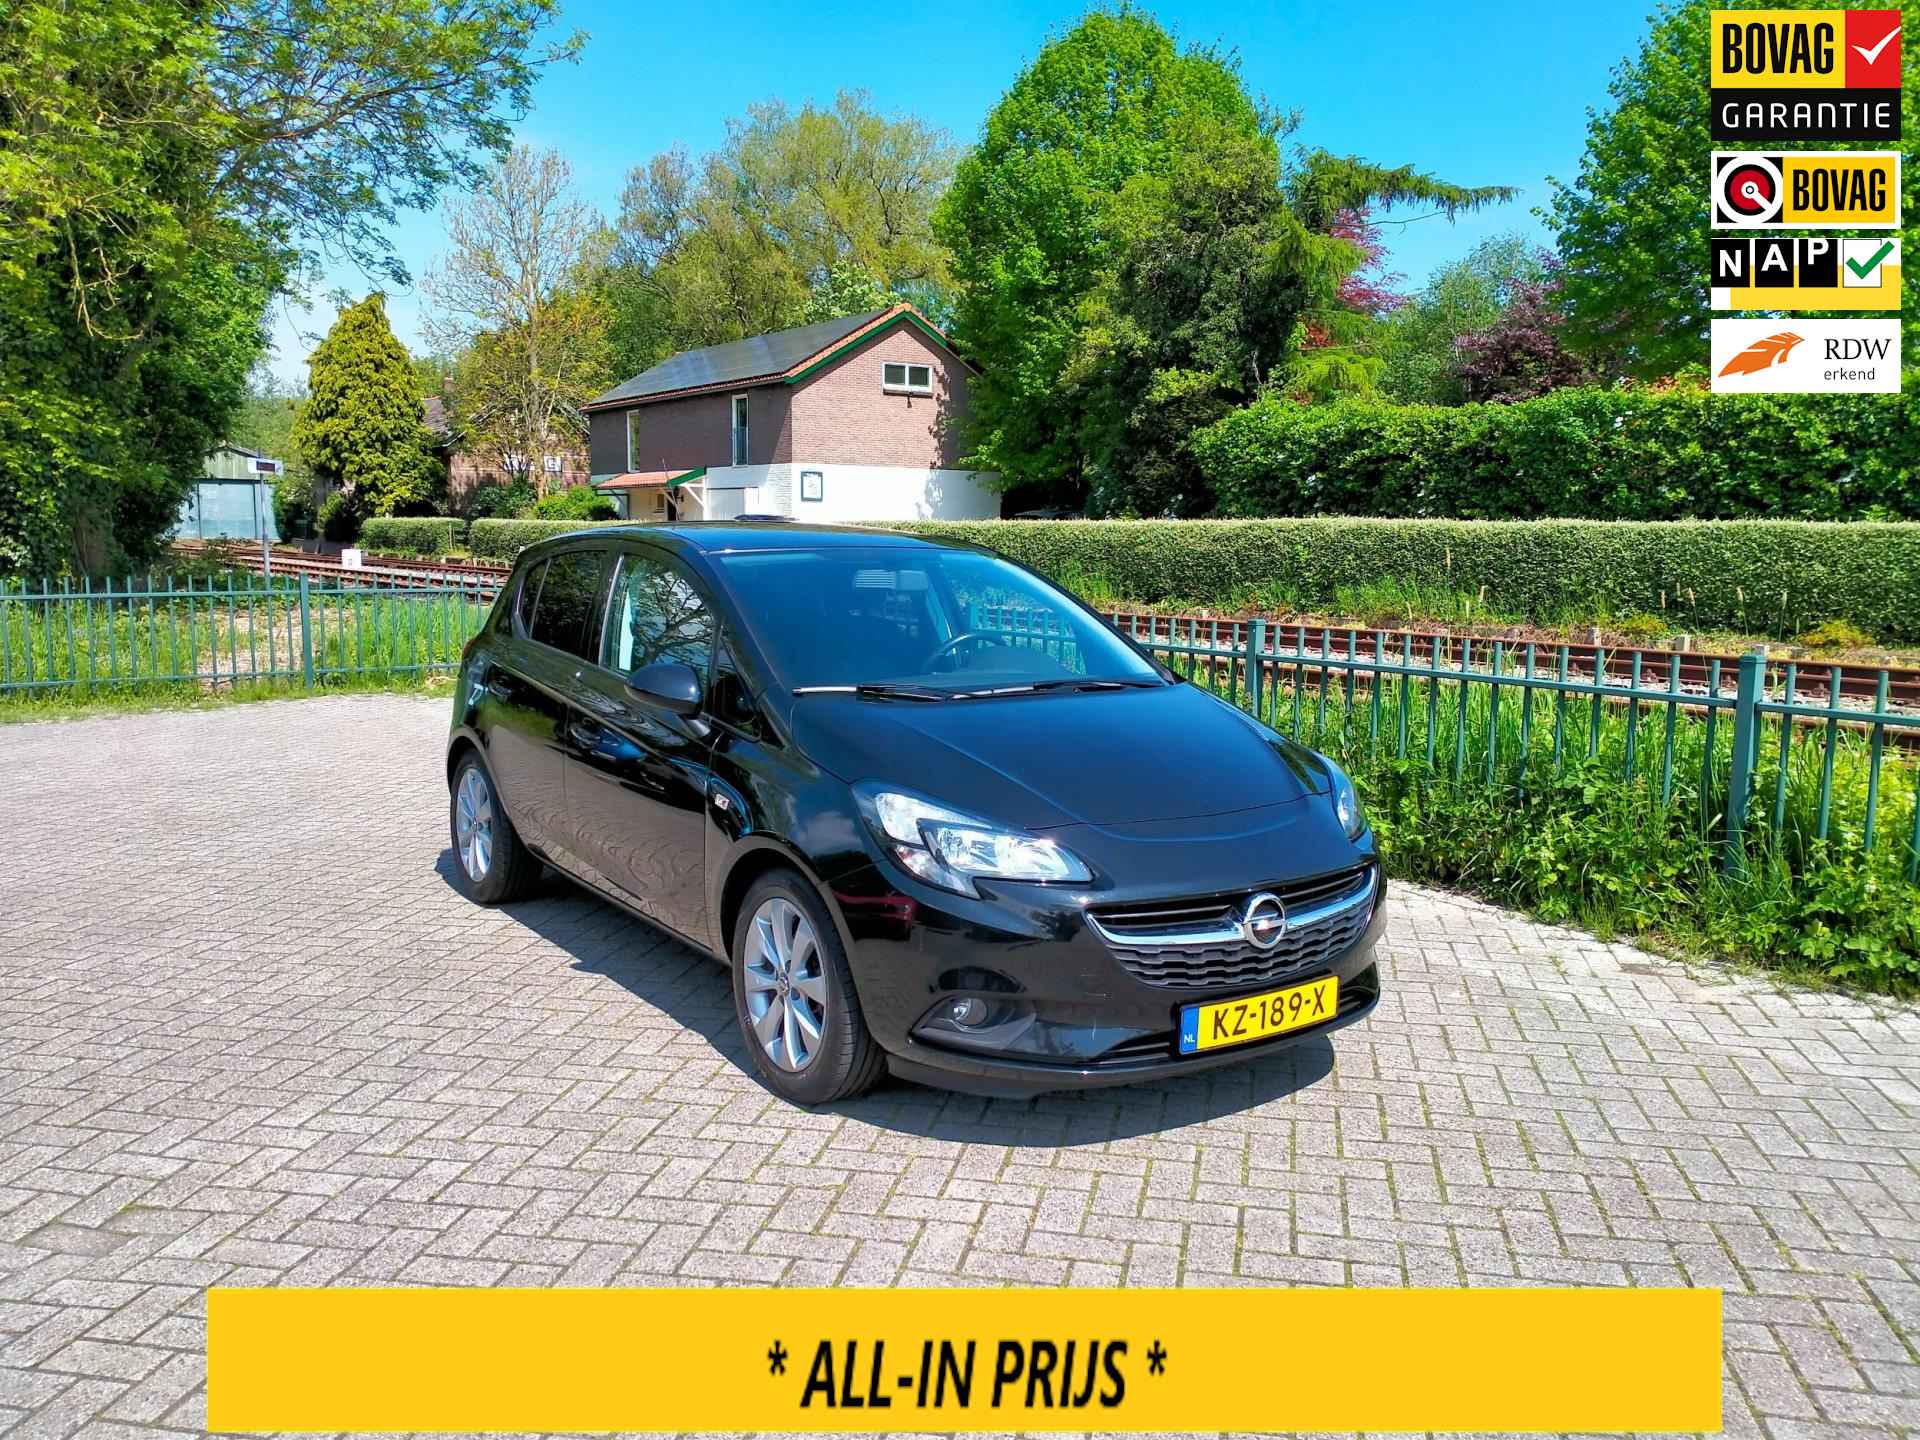 Opel Corsa 1.4 Edition + luxe uitv. clima 5 deurs lage km. RIJKLAAR - 1/25